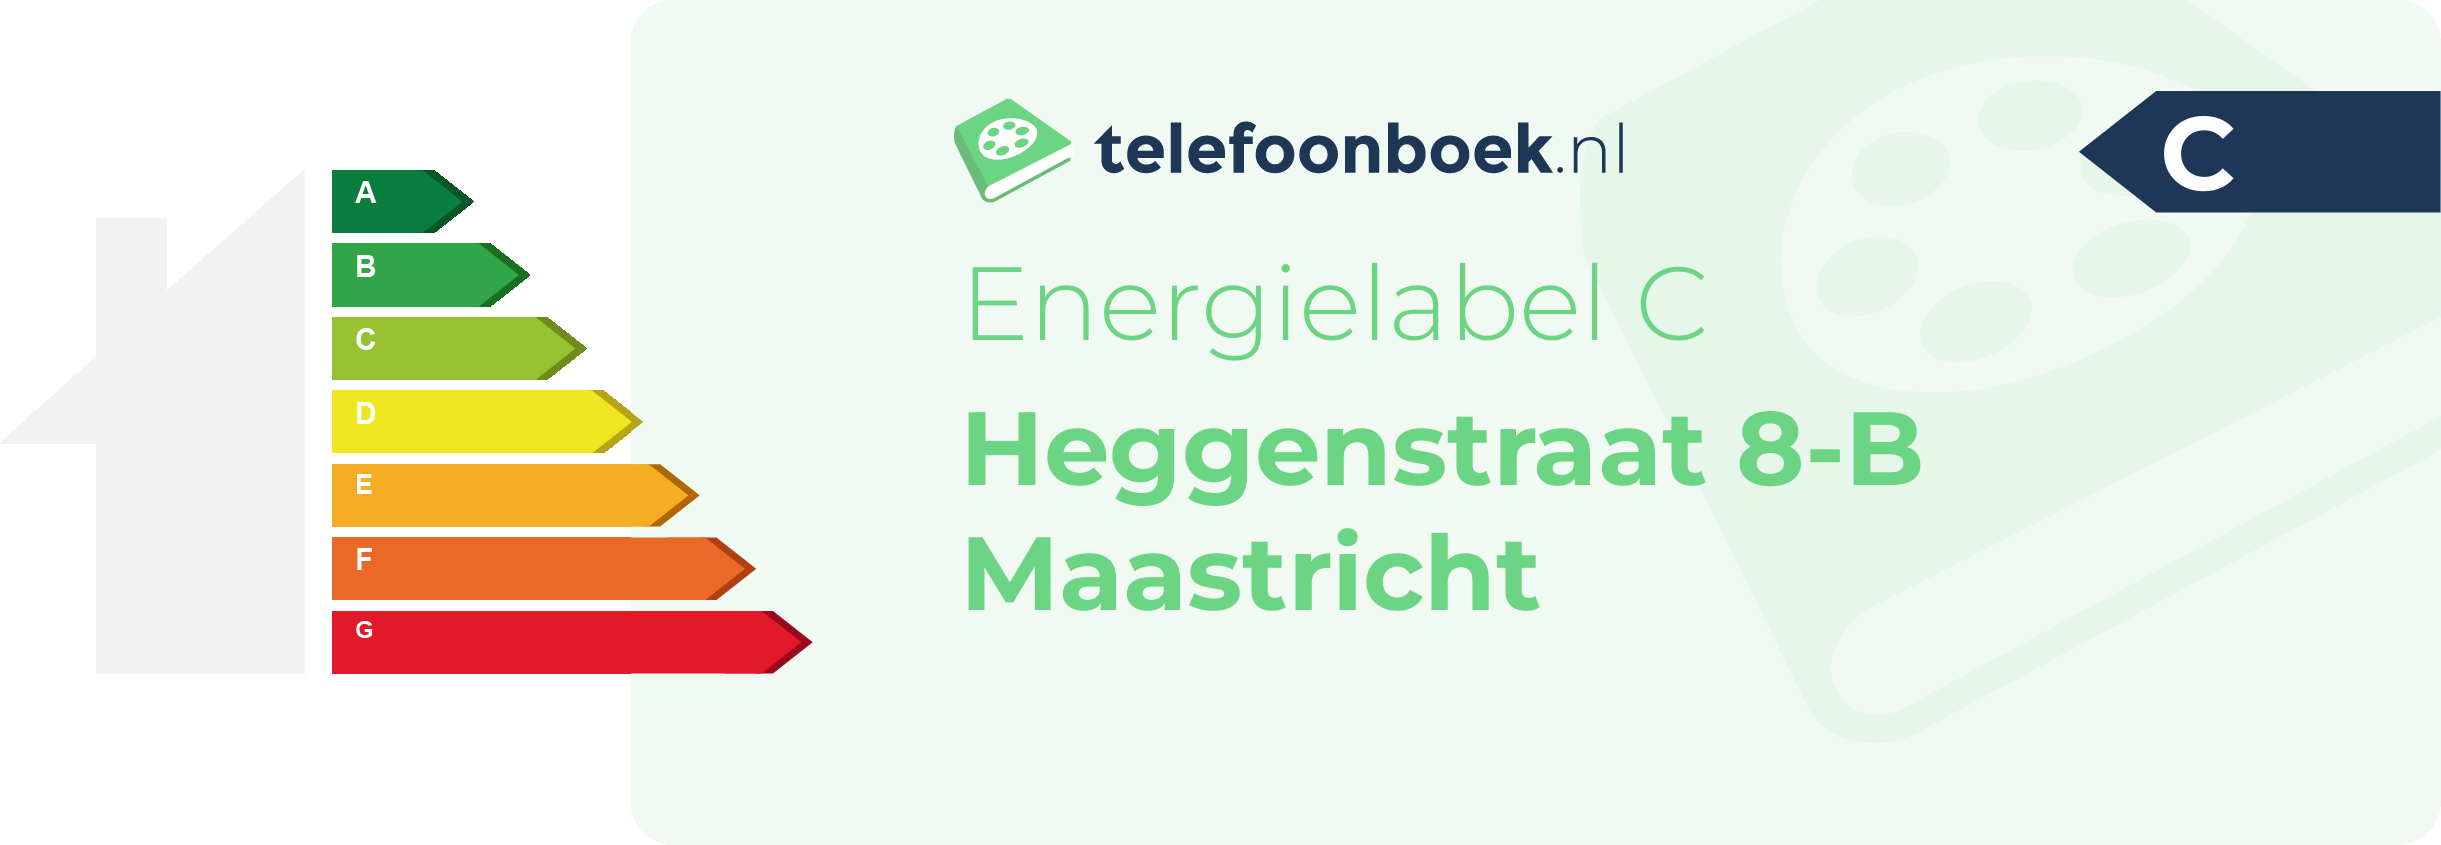 Energielabel Heggenstraat 8-B Maastricht